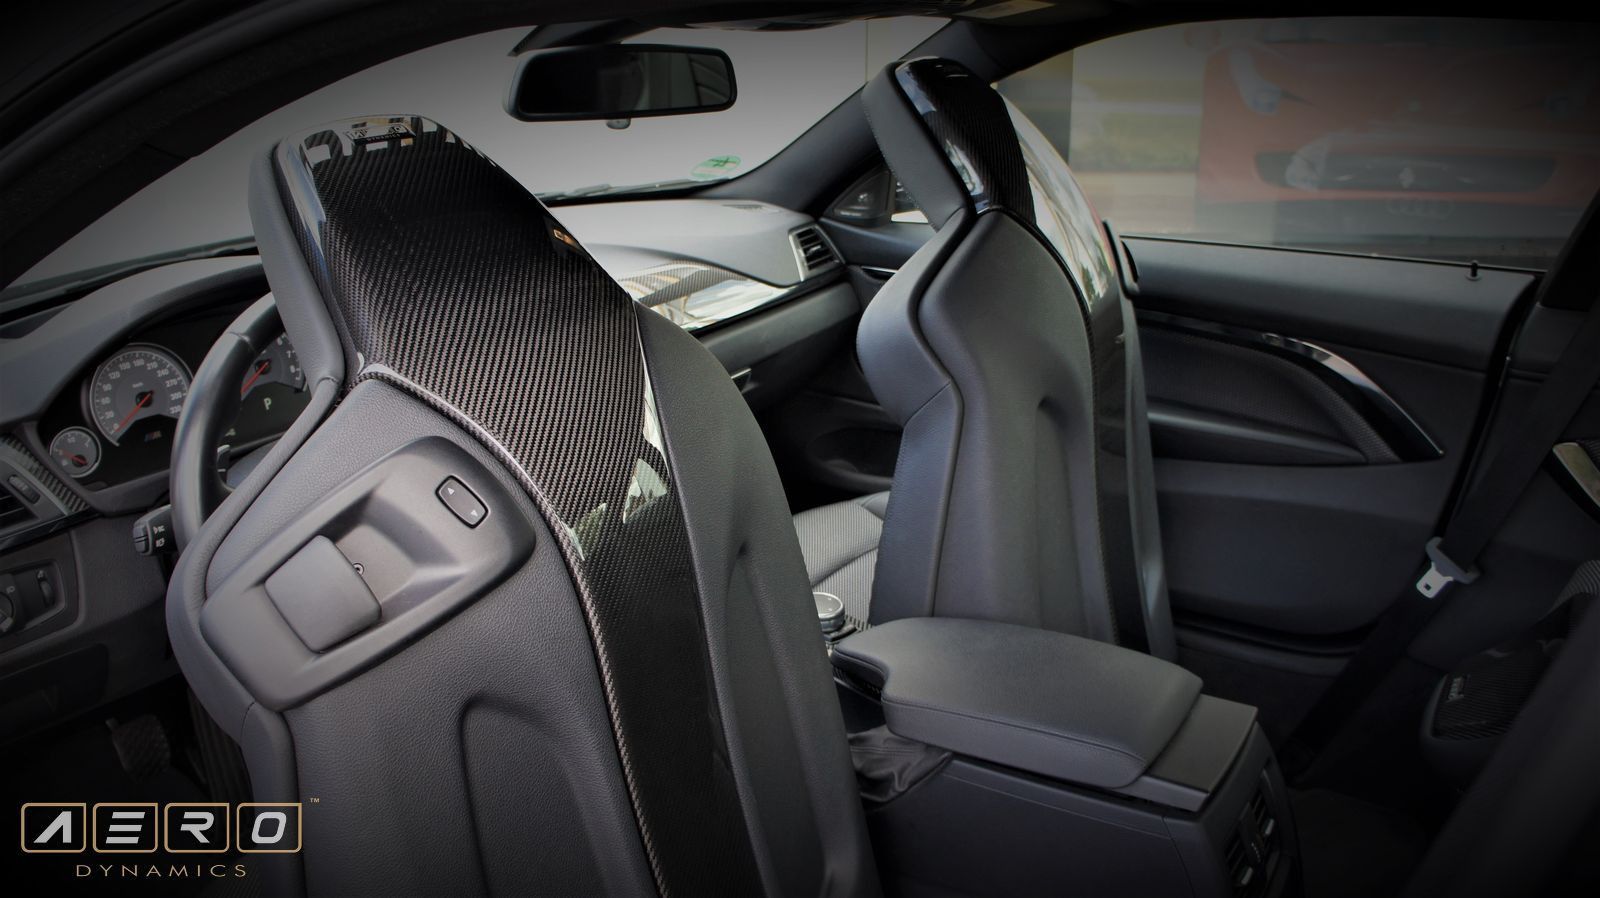 AERO Sitzlehnen-Verkleidung Sitzcover Carbon 4-teilig für BMW M3 F80 M4 F82 | Sitzverkleidung, Cover, Original